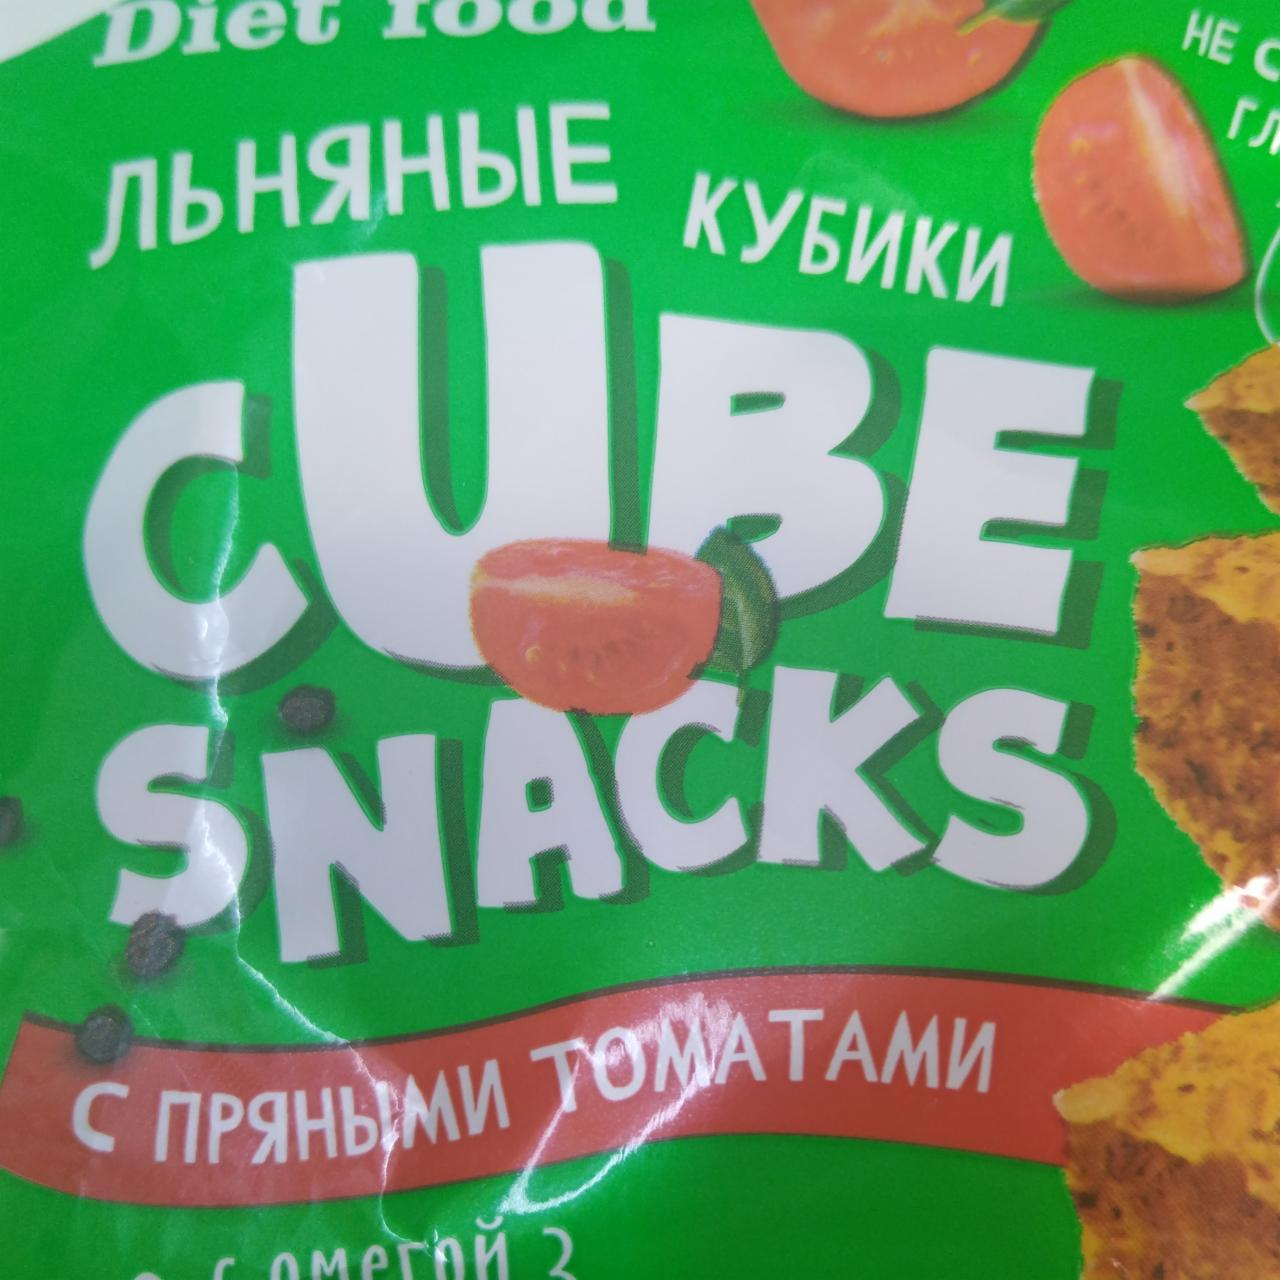 Фото - льняные кубики томат Cube Snacks